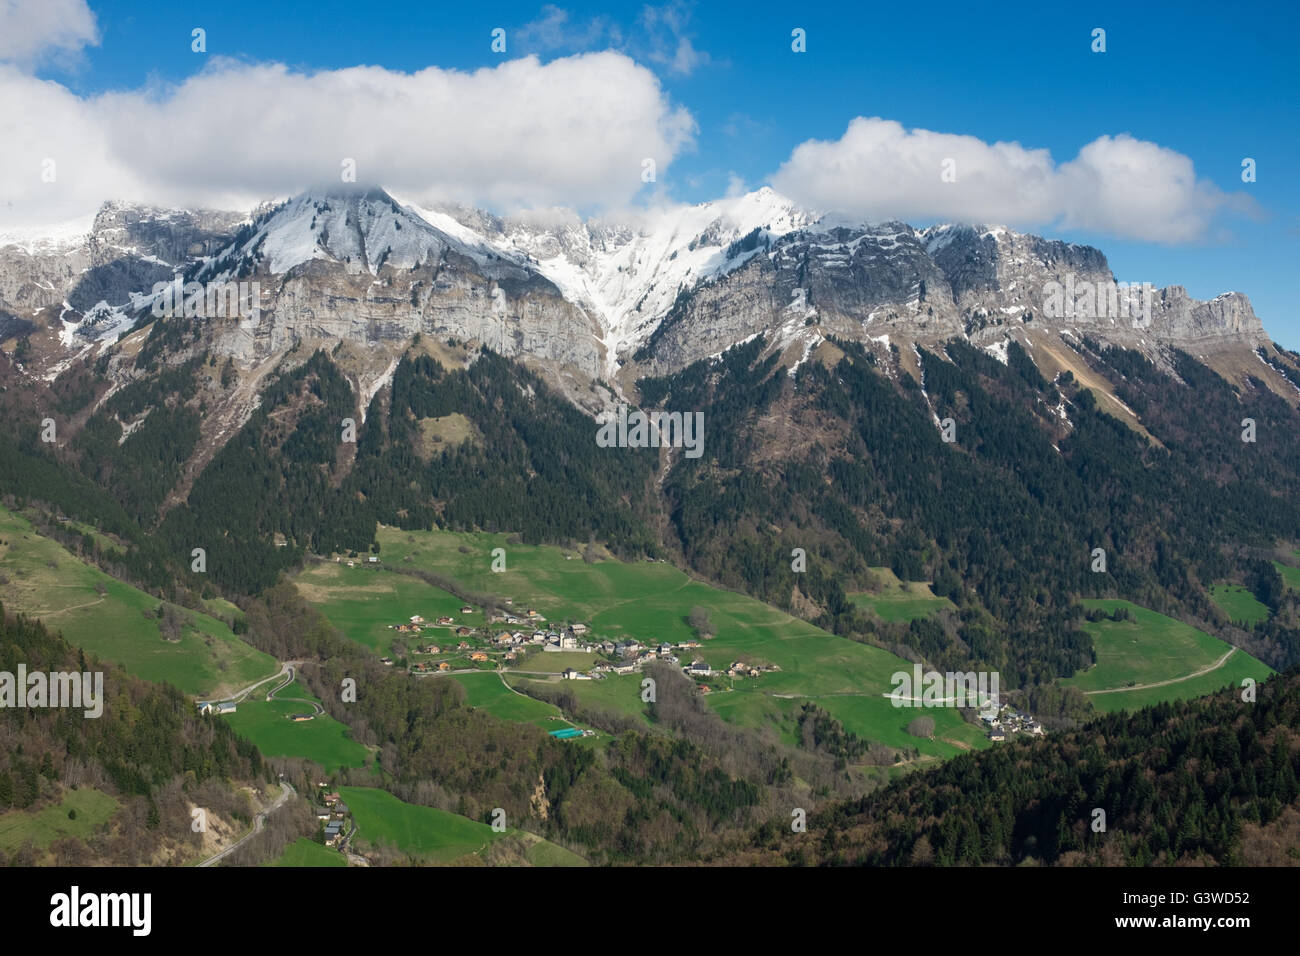 La Tournette Préalpes de Savoie sur le village de Montmin, près d'Annecy, Département de l'Auvergne-Rhône-Alpes, France Banque D'Images